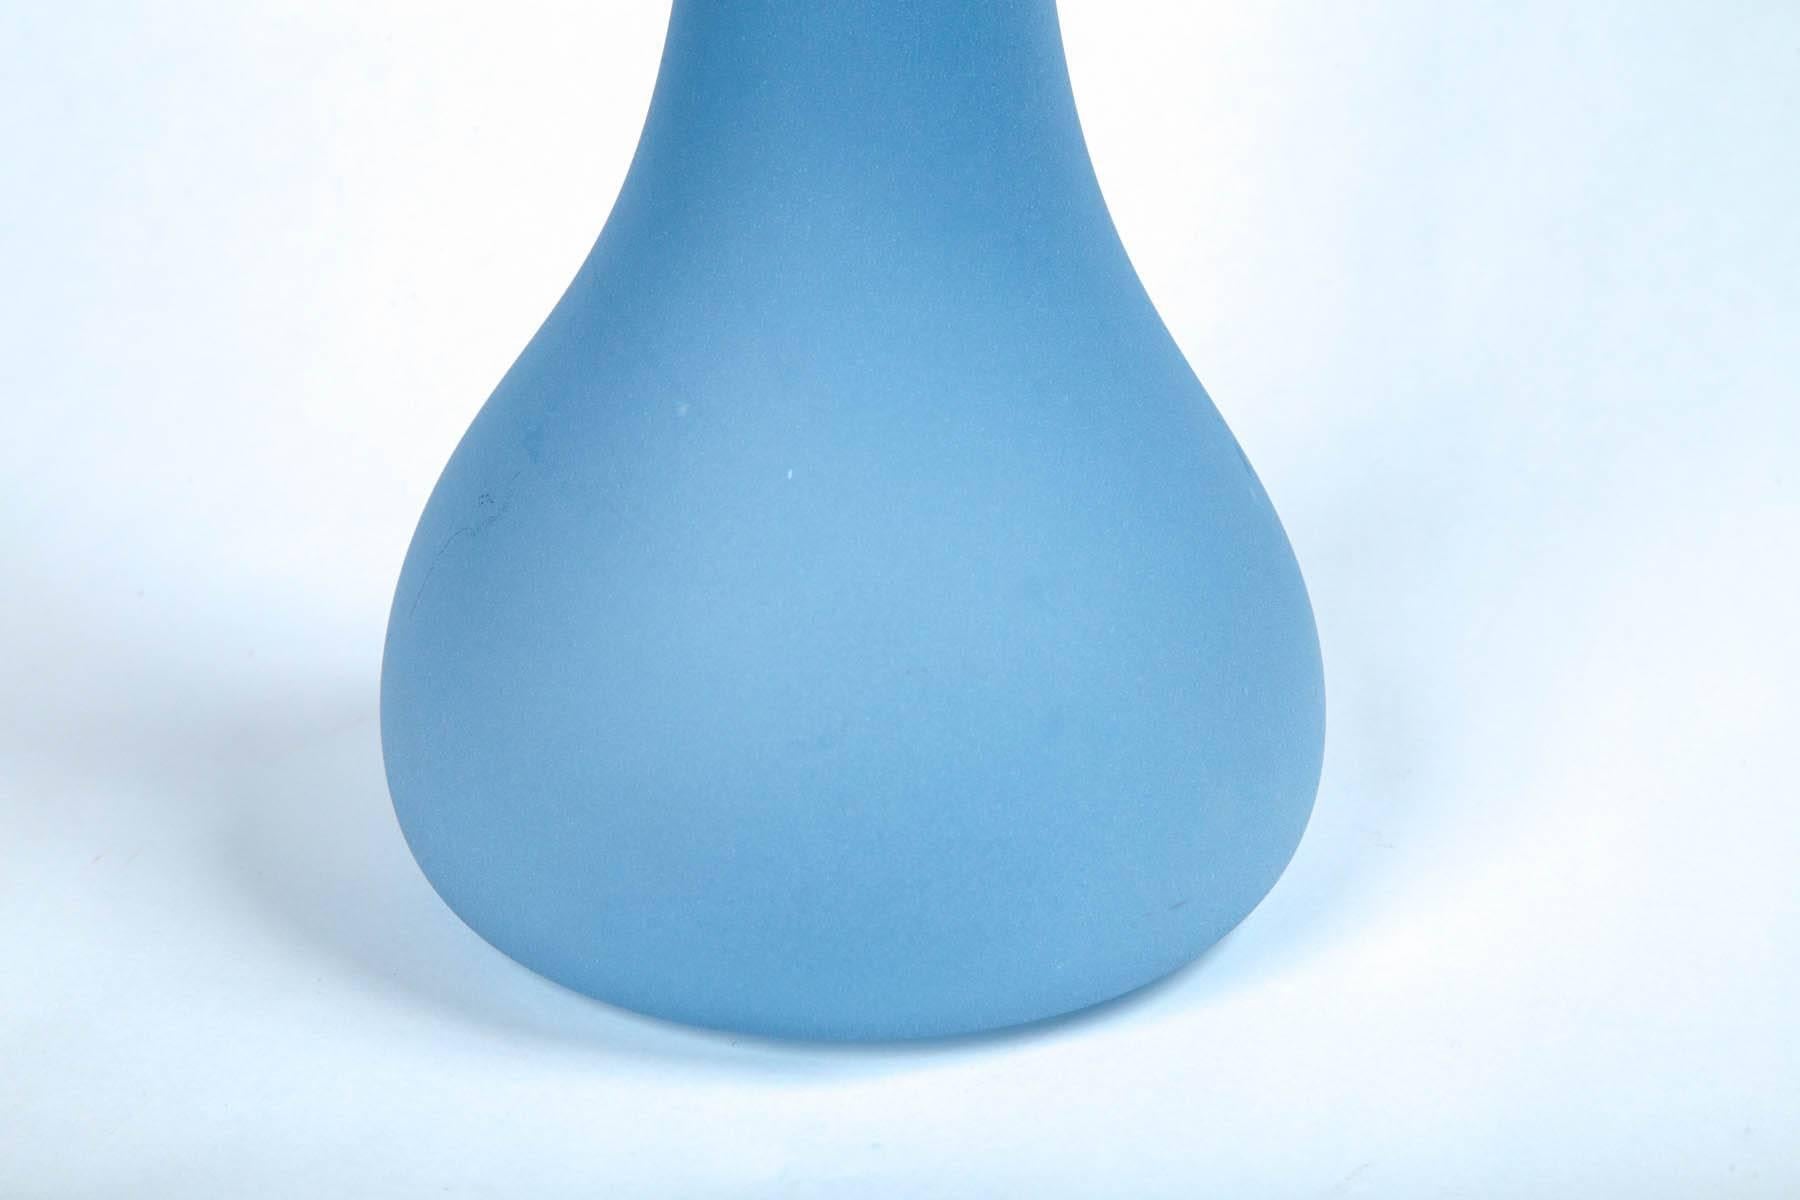 Vase aus mundgeblasenem Kunstglas, 20. Jahrhundert. Wunderschönes, mattblaues Glas. Skulpturale Form. Geätzte Signatur auf der Unterseite.